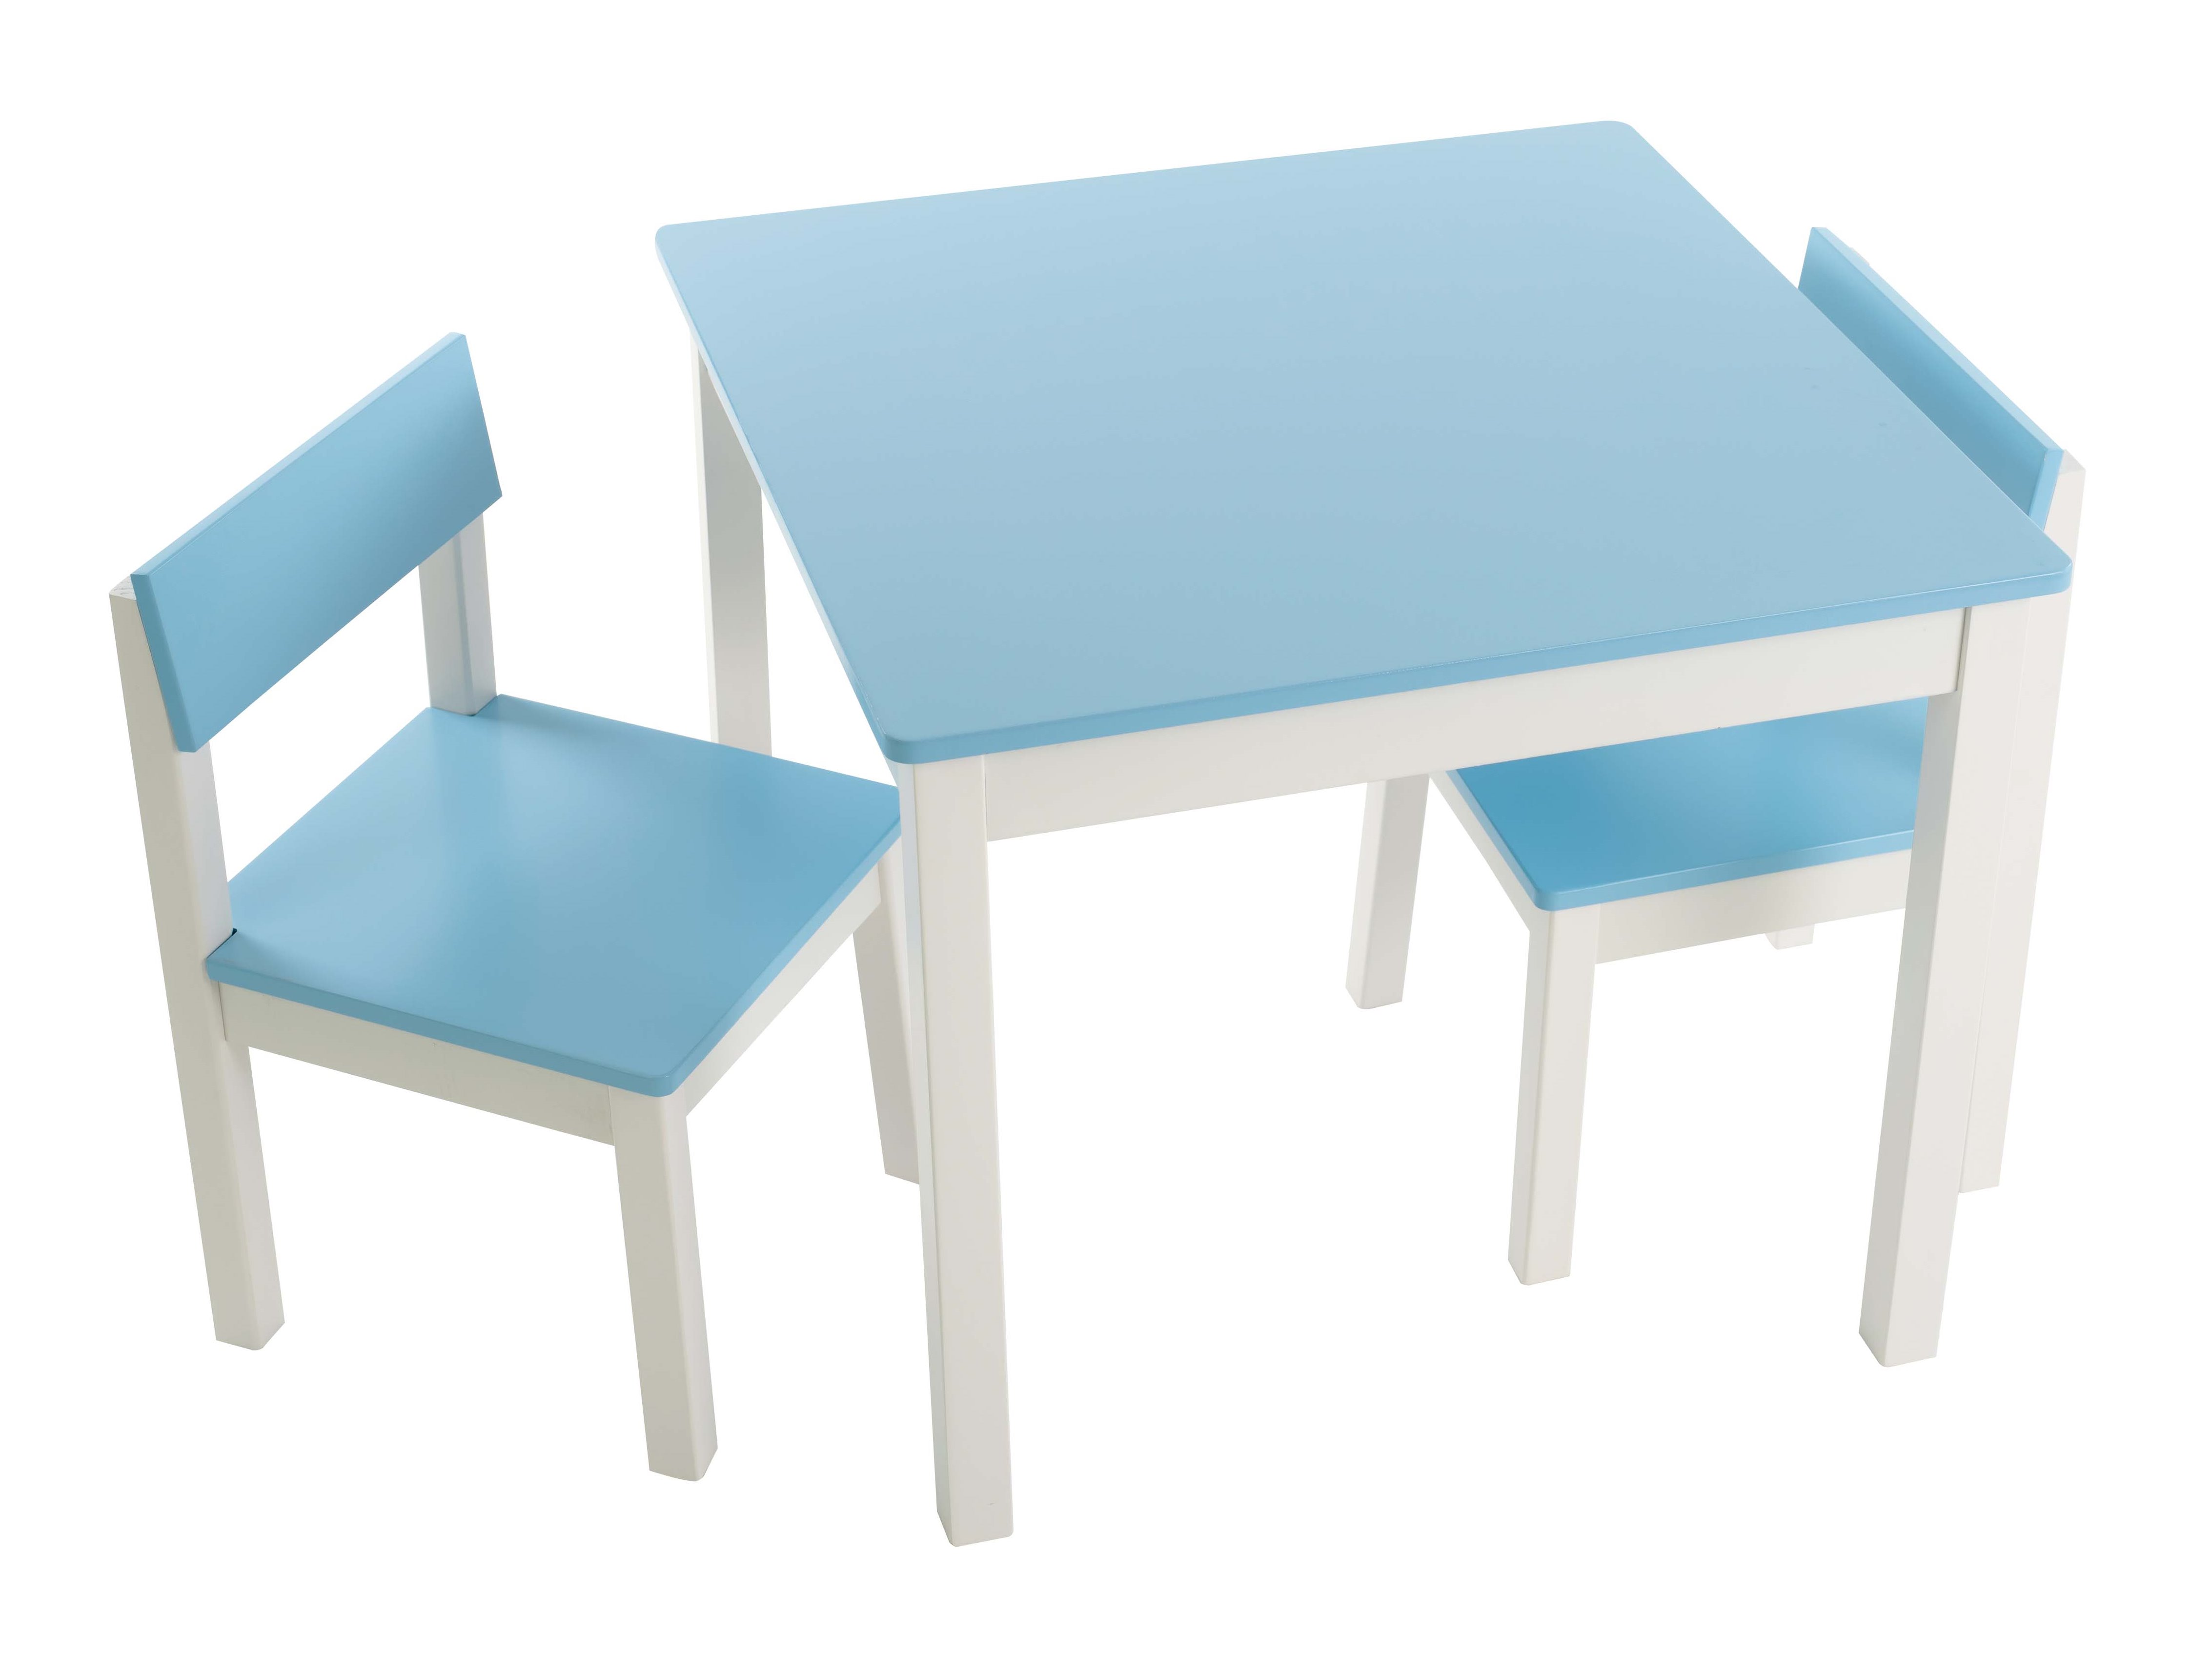 שולחן וכסאות לילדים - דגם חלק – צבע תכלת -  קוקולה.   6 צבעים לבחירה: שמנת, לבן, ורוד, לילך, פיסטוק, תכלת. מחיר הסט כולל שולחן ושני כסאות. ניתן להוסיף פלטת פרספקס להגנה על פלטת השולחן בעלות של 69 ש